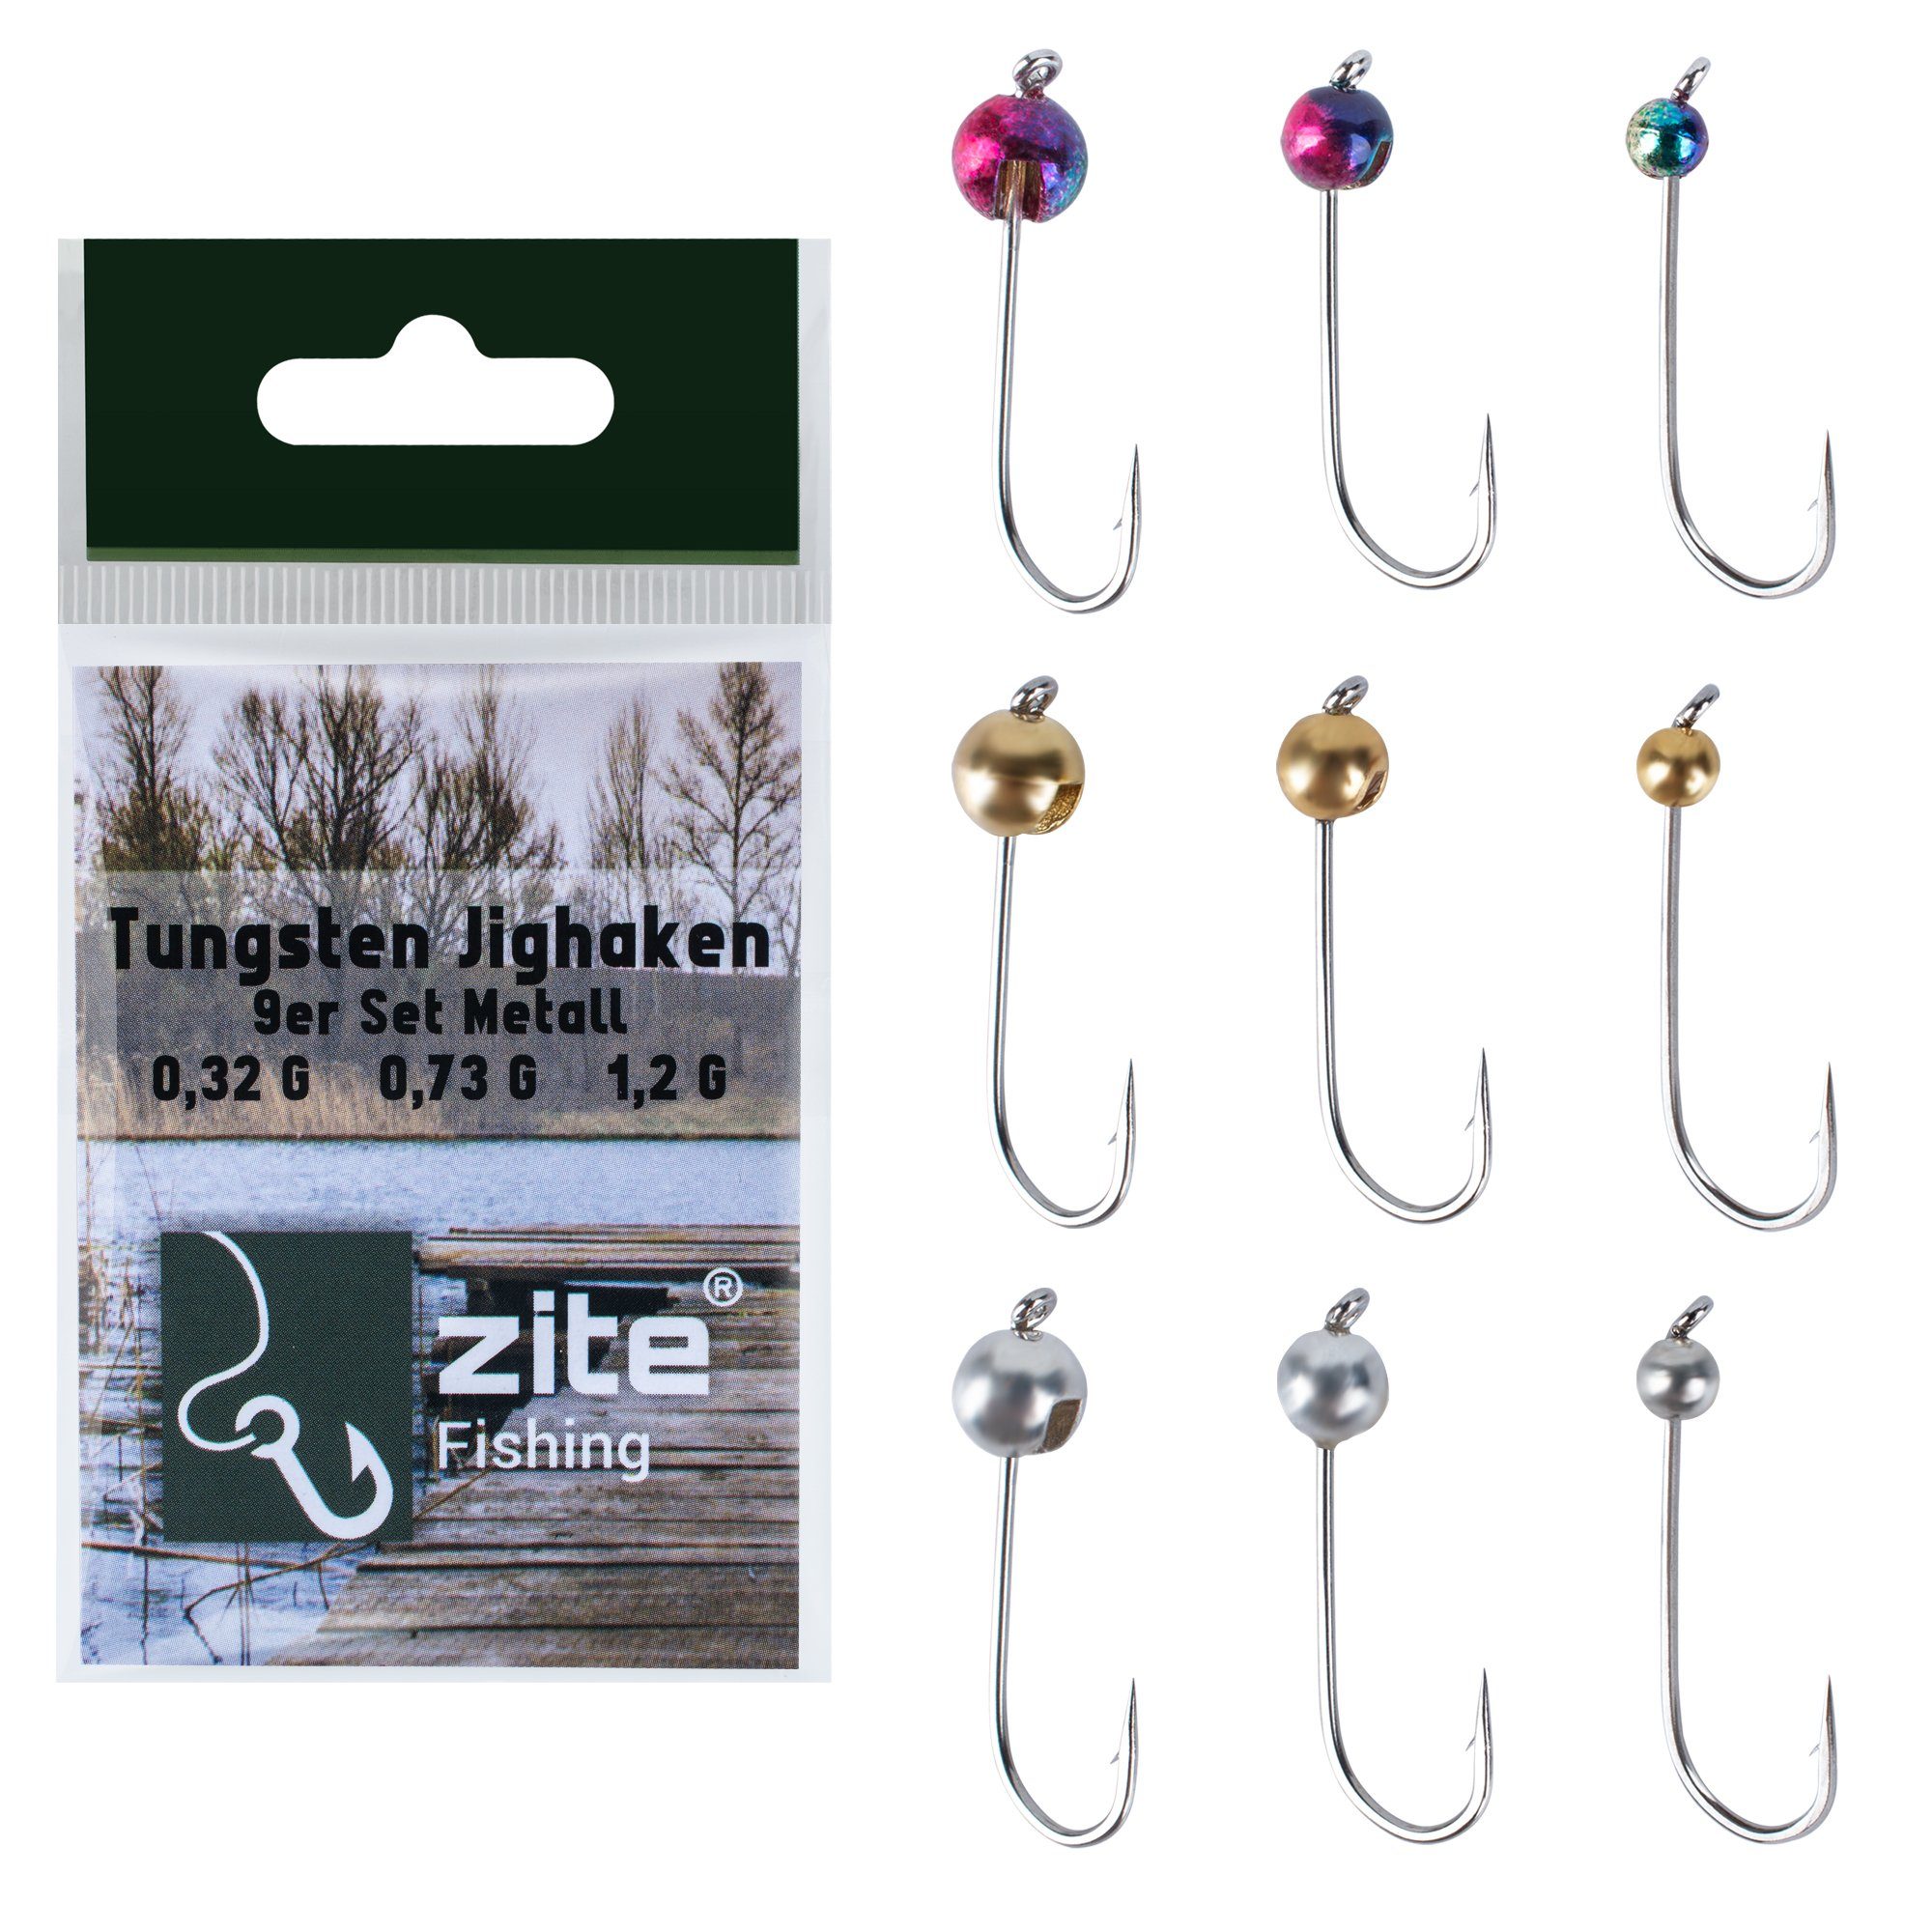 Zite Jighaken Metallic 9 Stück - Tungstenperlen auf Forellenhaken 0,3-1,2g UL Angeln